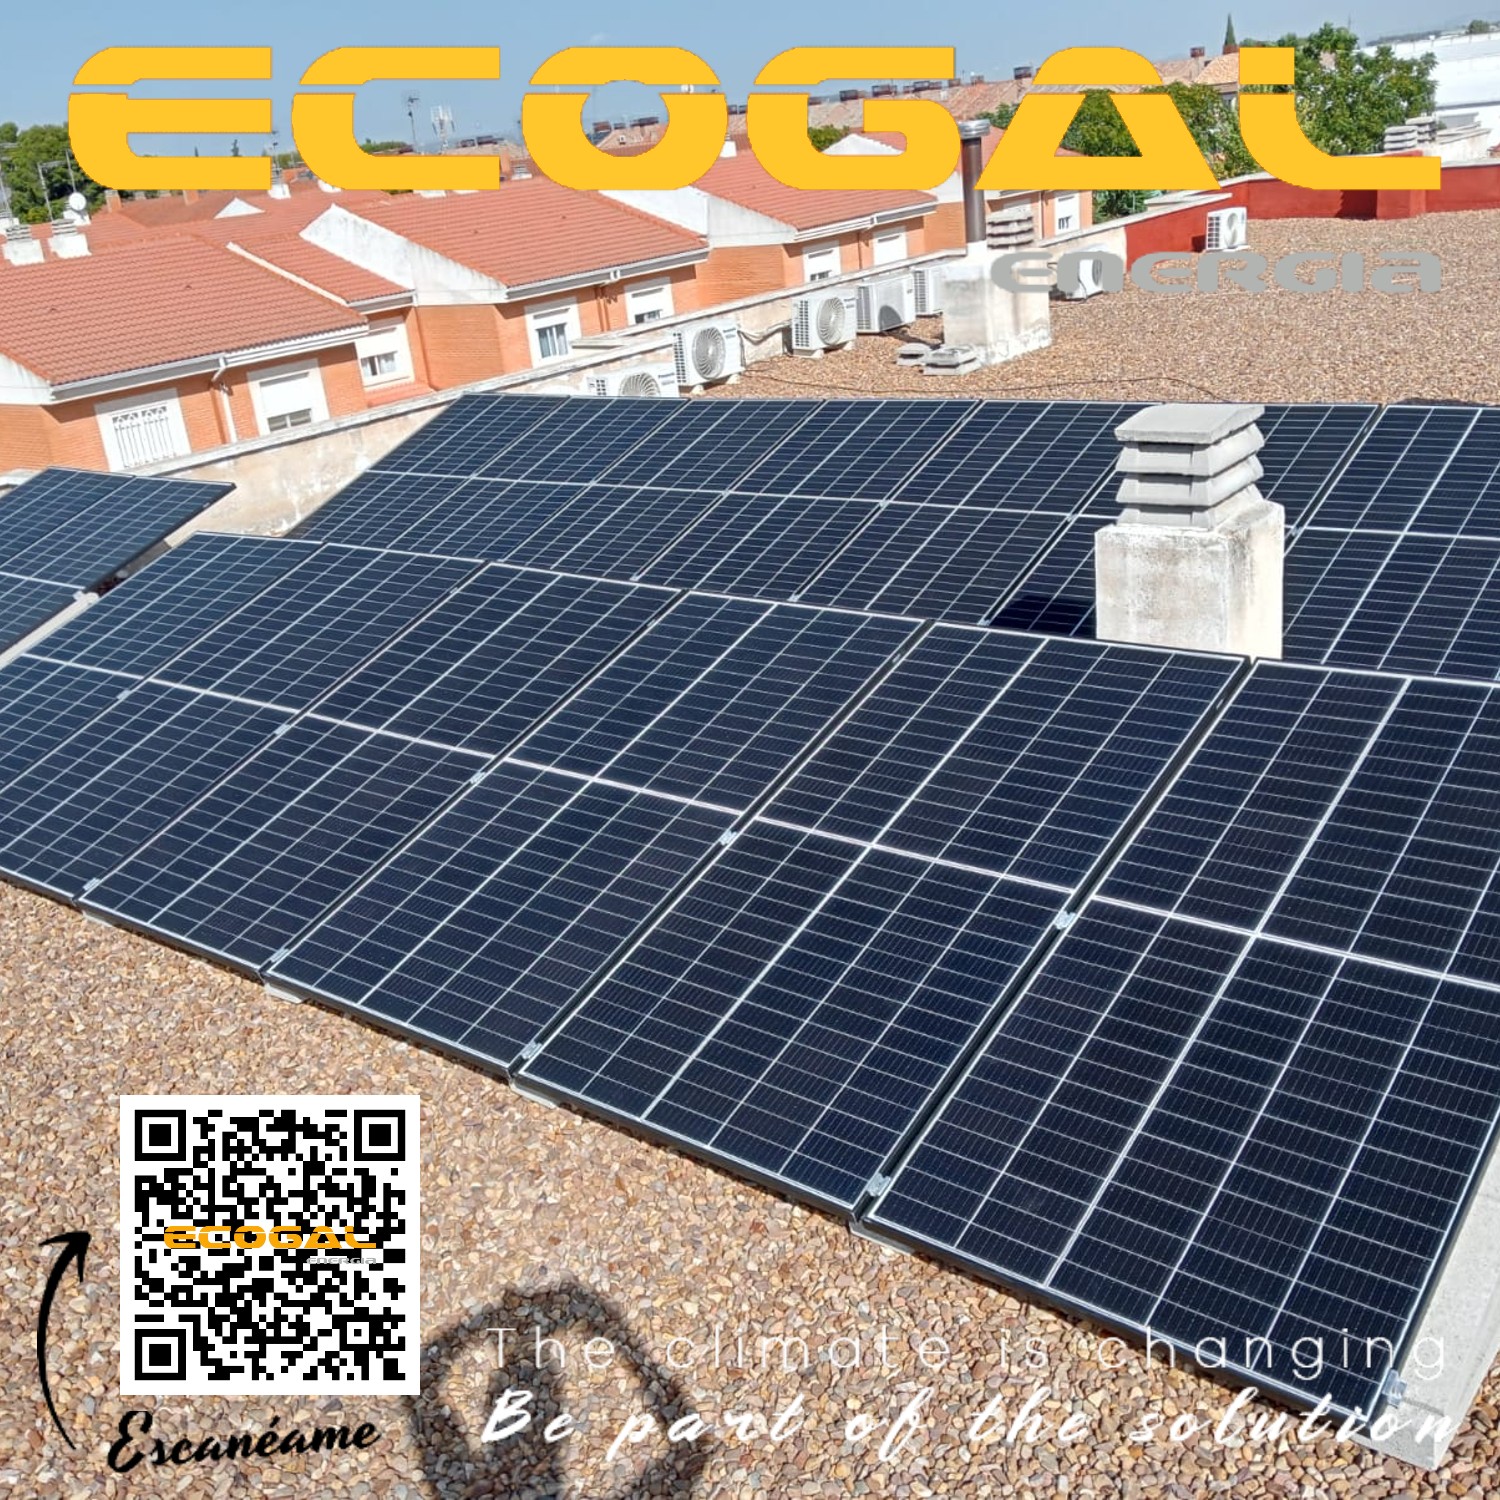 Instalación de paneles solares de 6 kWp en Miguelturra(Ciudad Real).